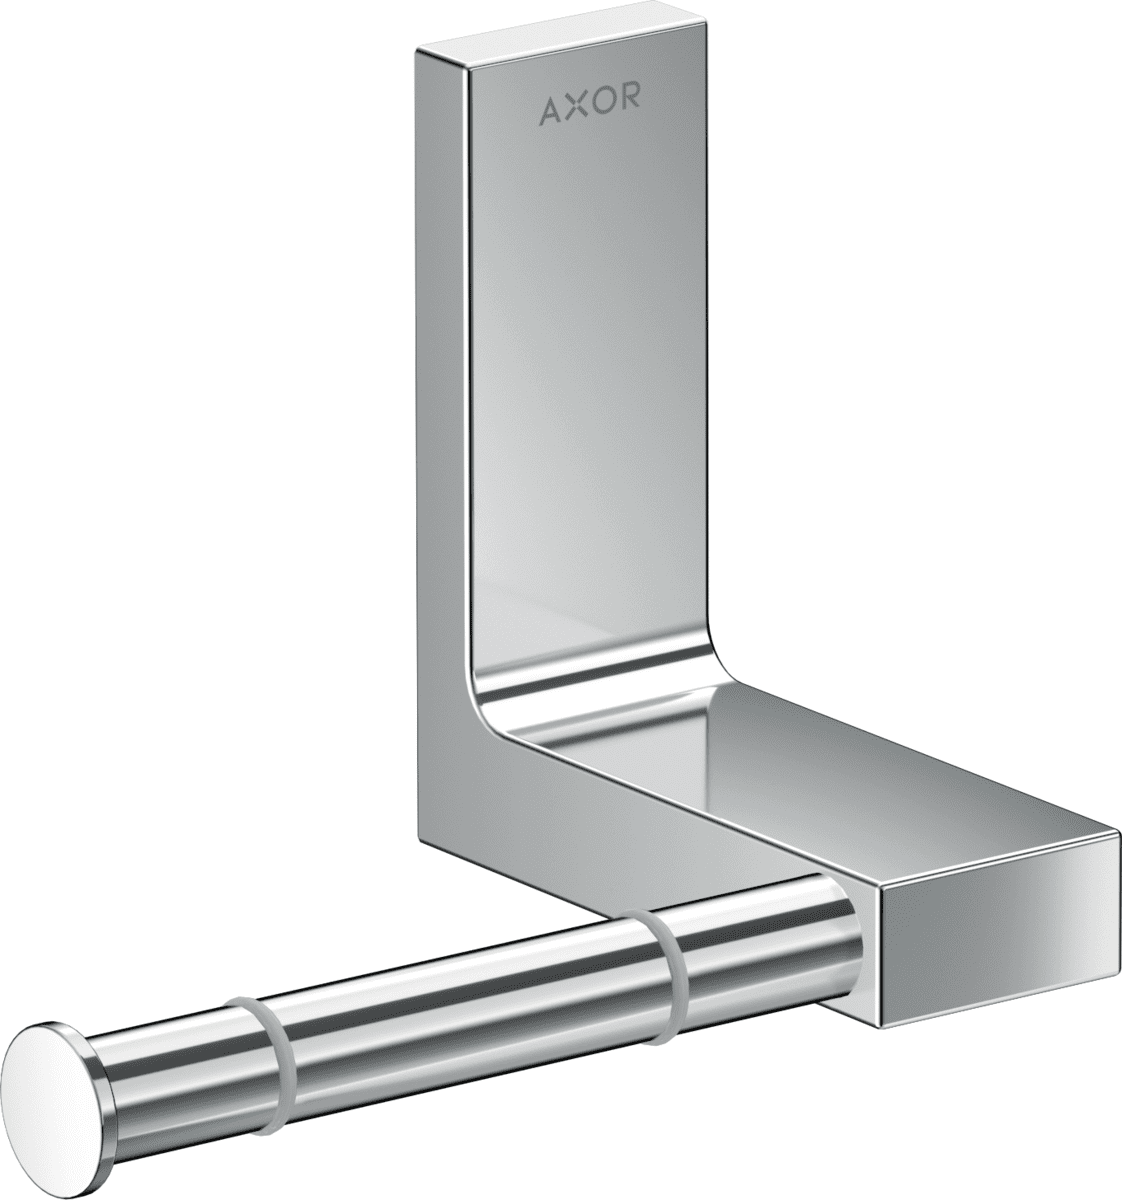 Зображення з  HANSGROHE AXOR Universal Rectangular Toilet paper holder #42656000 - Chrome